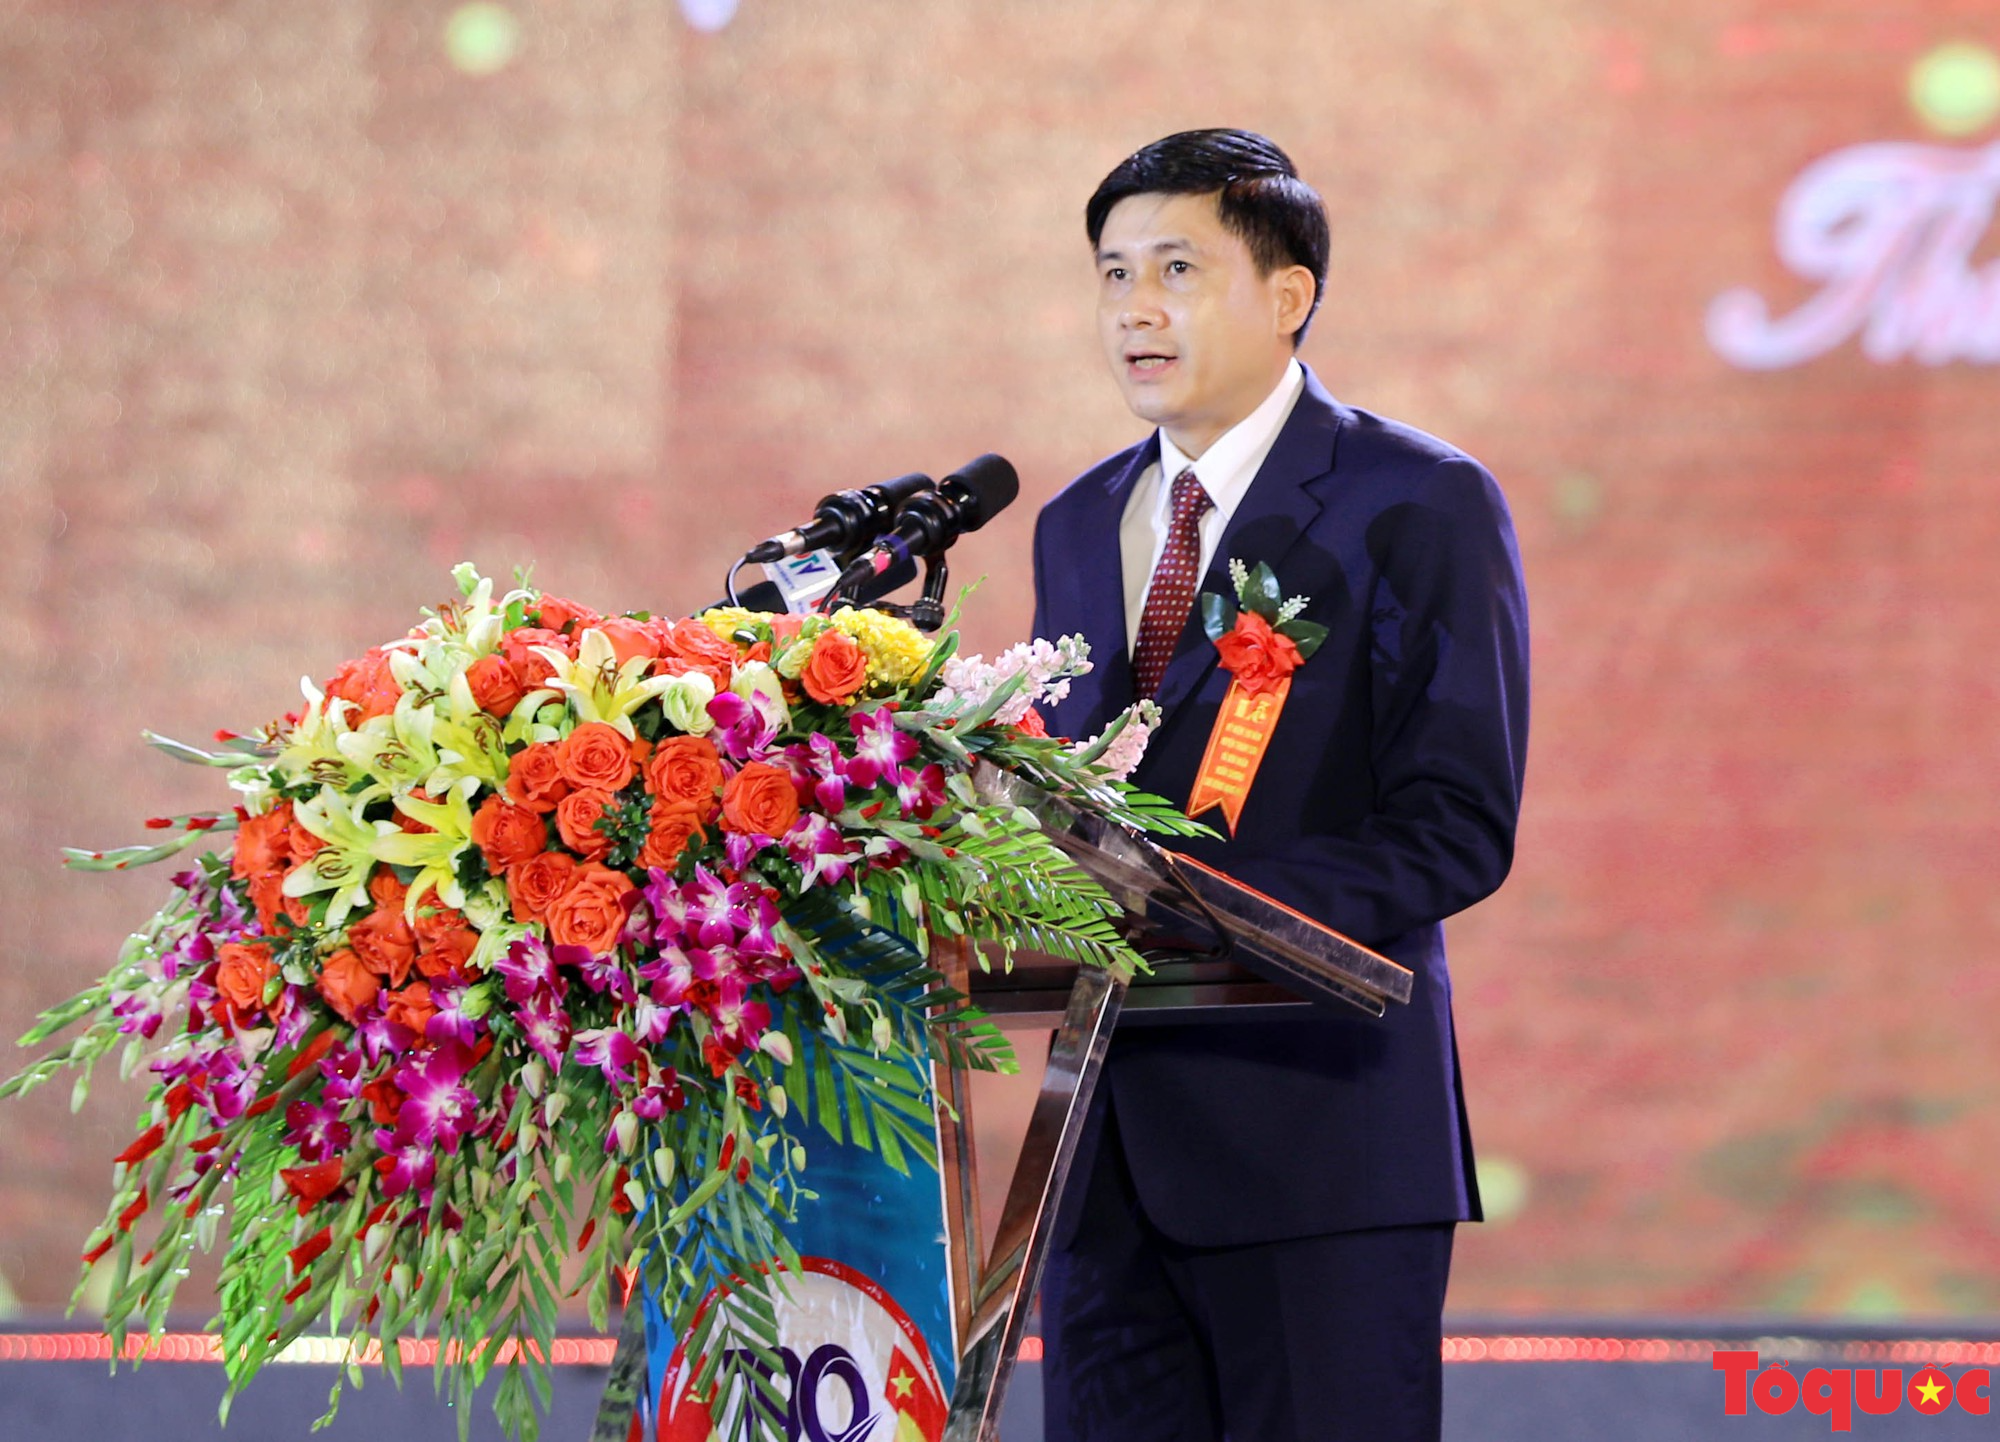 Phú Thọ kỷ niệm 190 năm thành lập huyện Thanh Sơn - Ảnh 3.